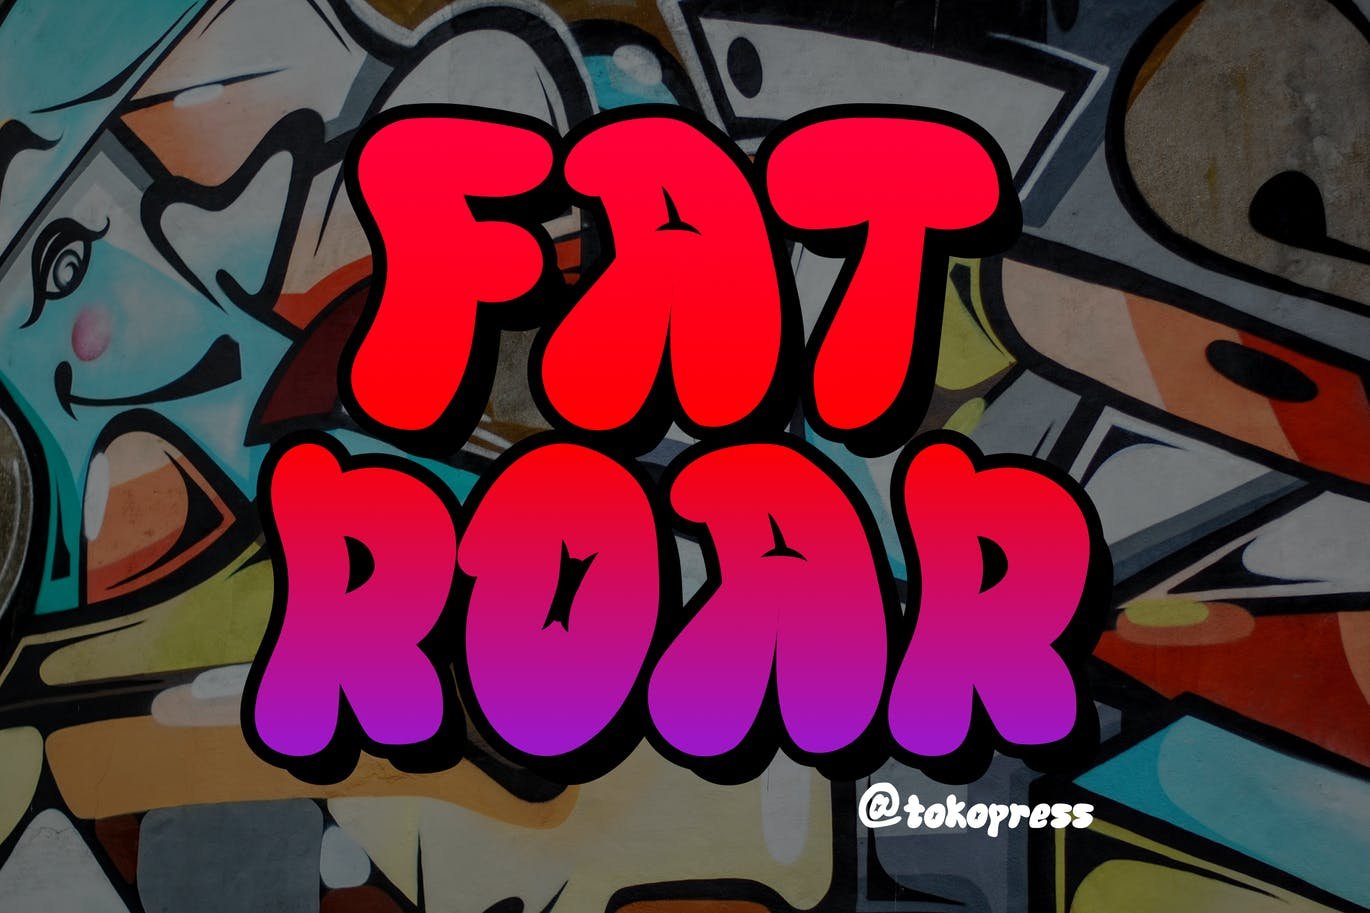 FAT ROAR- Cartoon Graffiti font cover image.